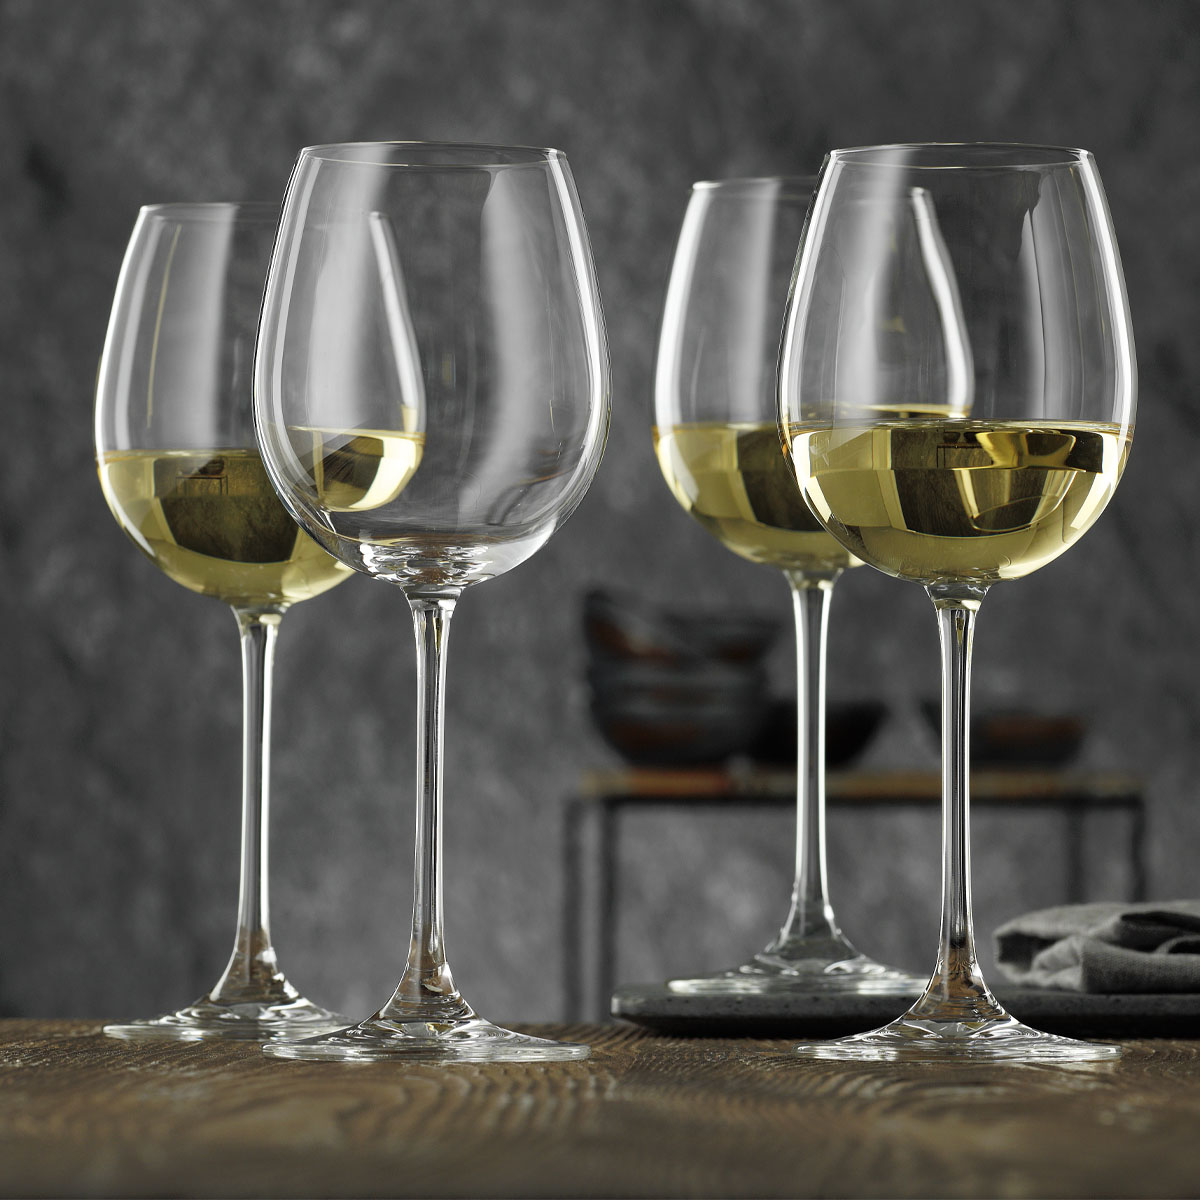 Набор бокалов для вина Nachtmann Vivendi 474мл, 4шт набор фужеров same пиза золото для шампанского 150 мл 6 шт